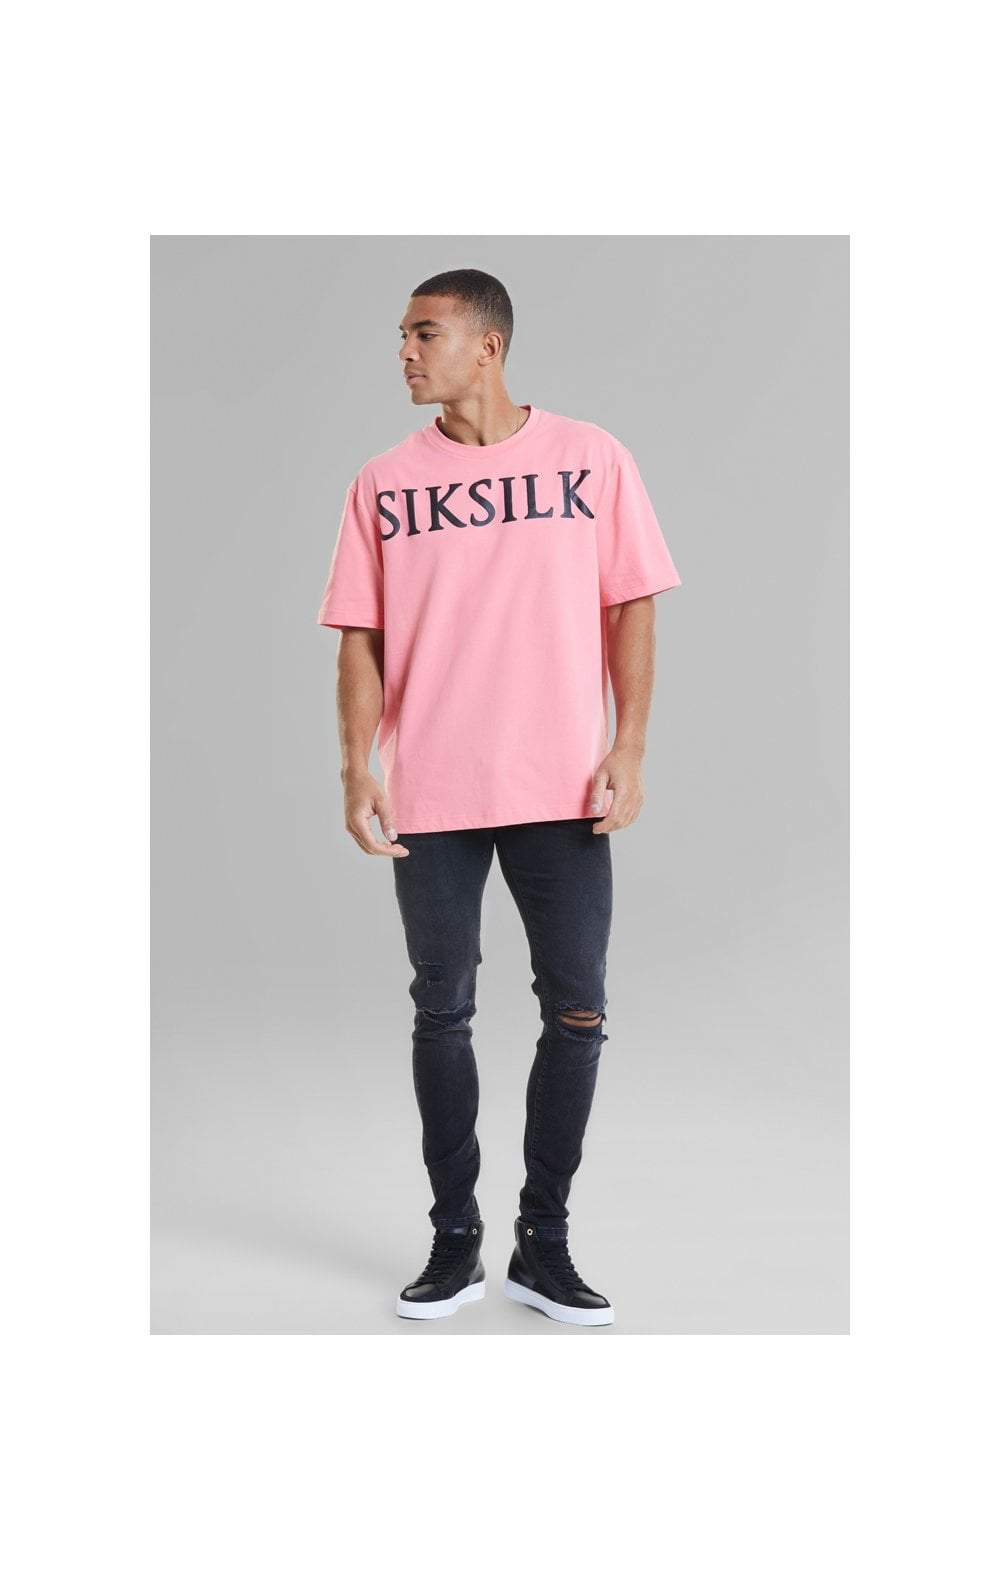 Camiseta SIKSILK pink - SS-19489 Pasarela Roja